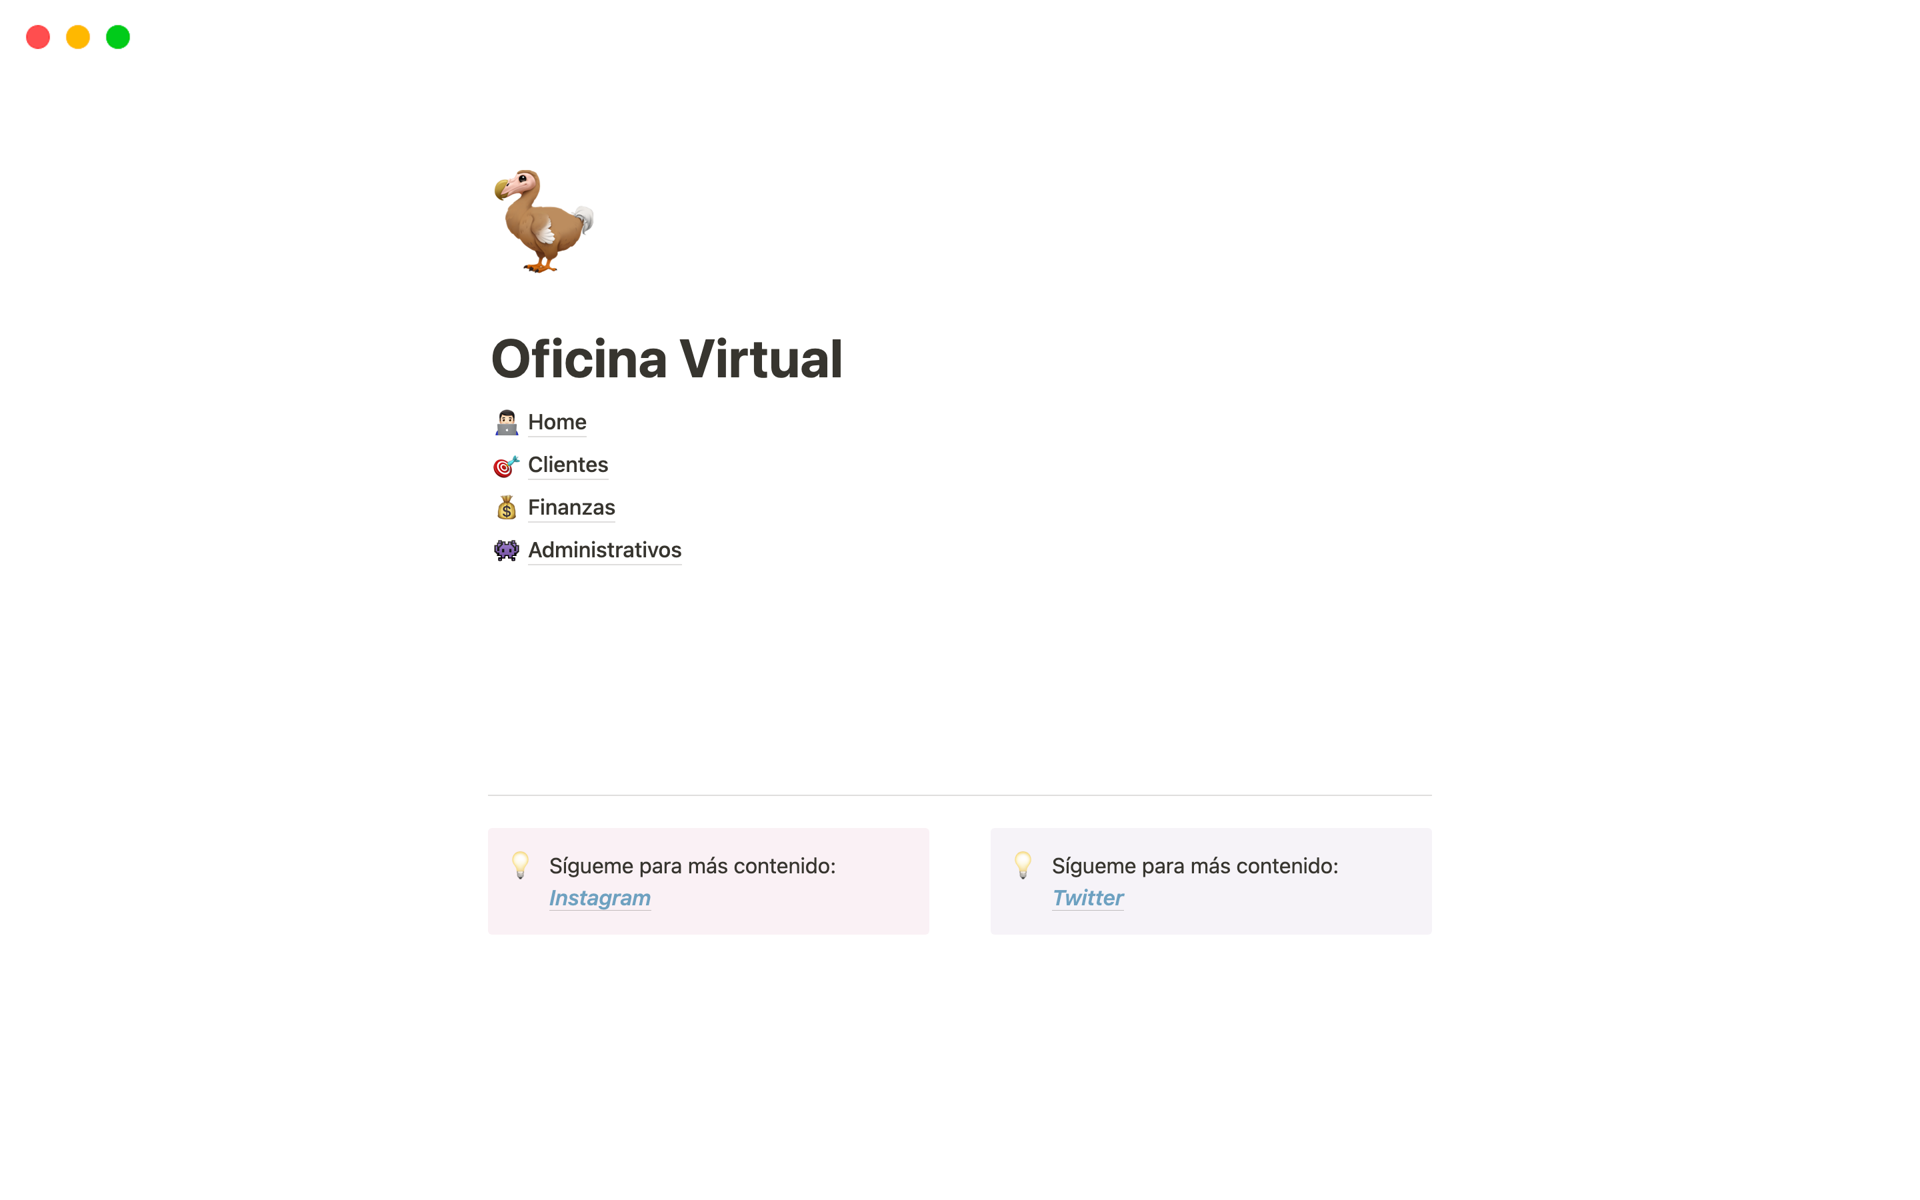 Vista previa de una plantilla para Oficina Virtual